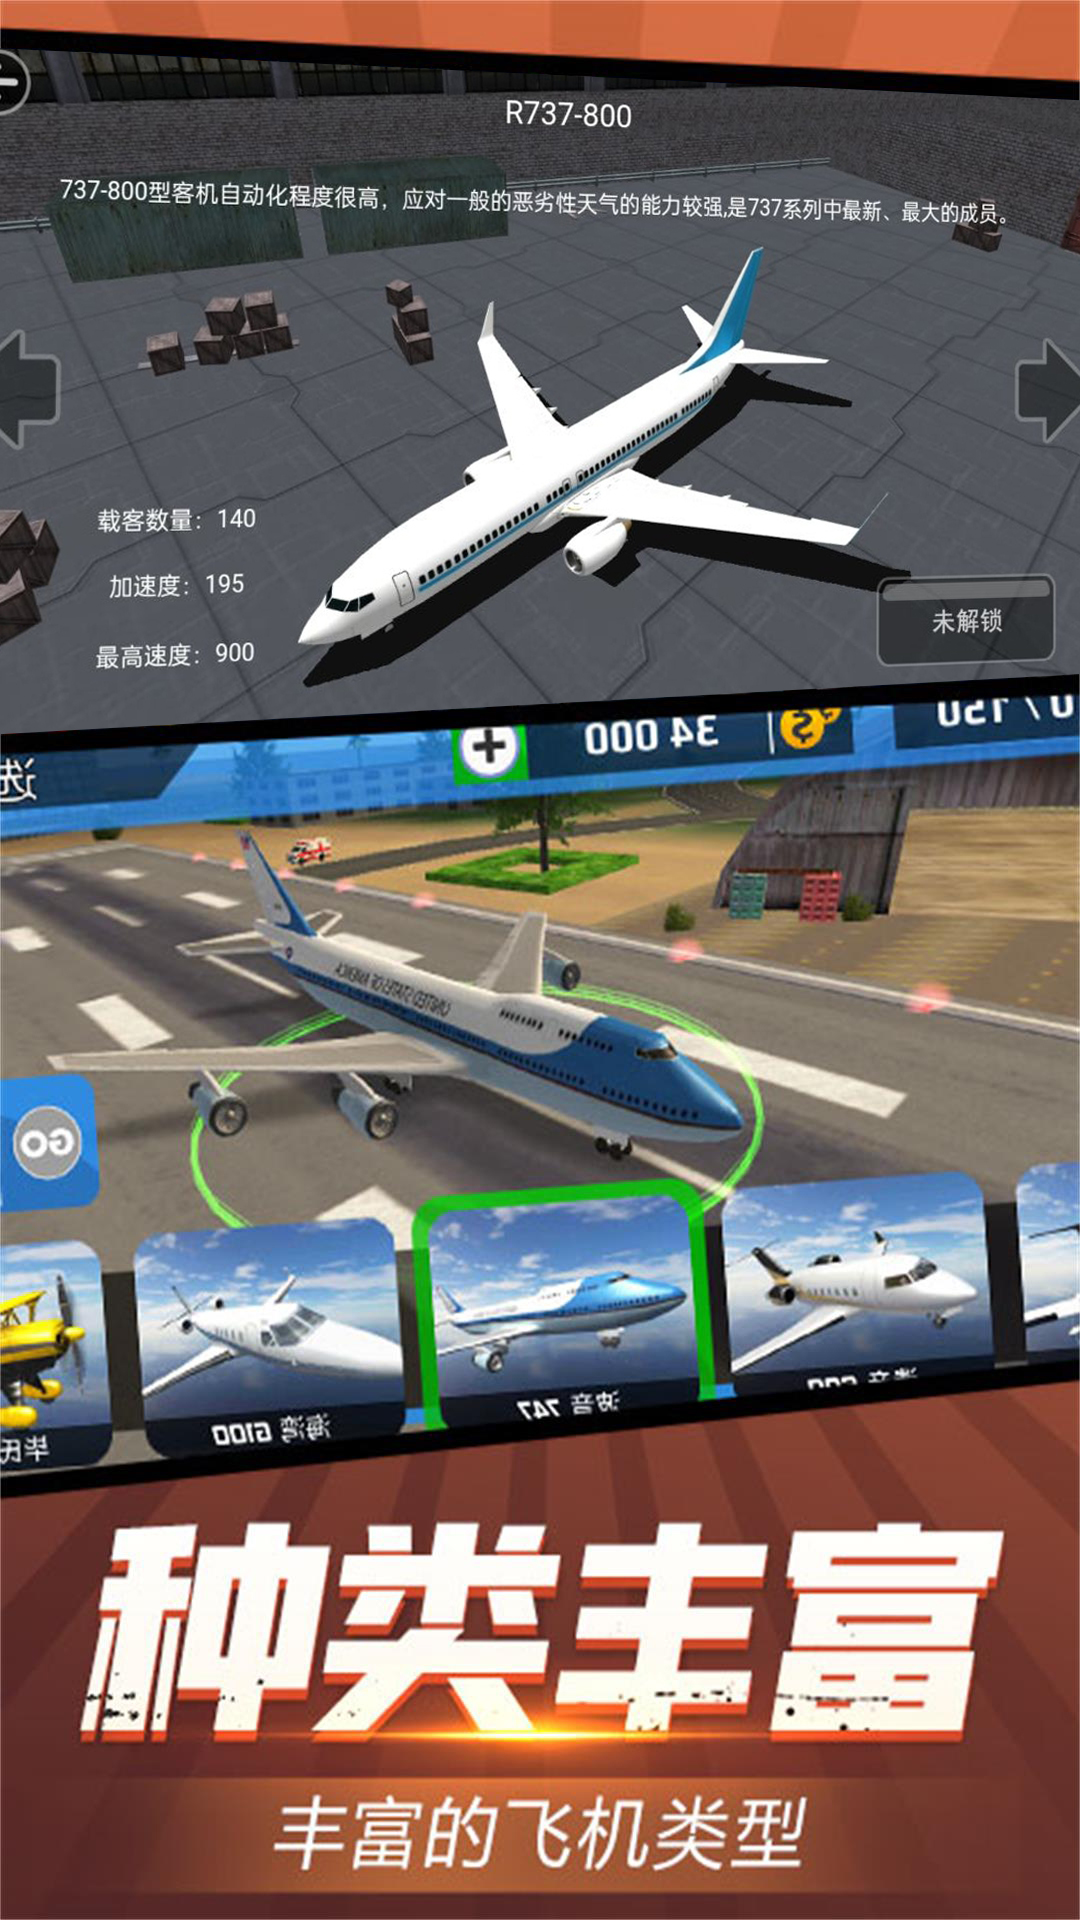 虚拟飞行模拟游戏 截图1